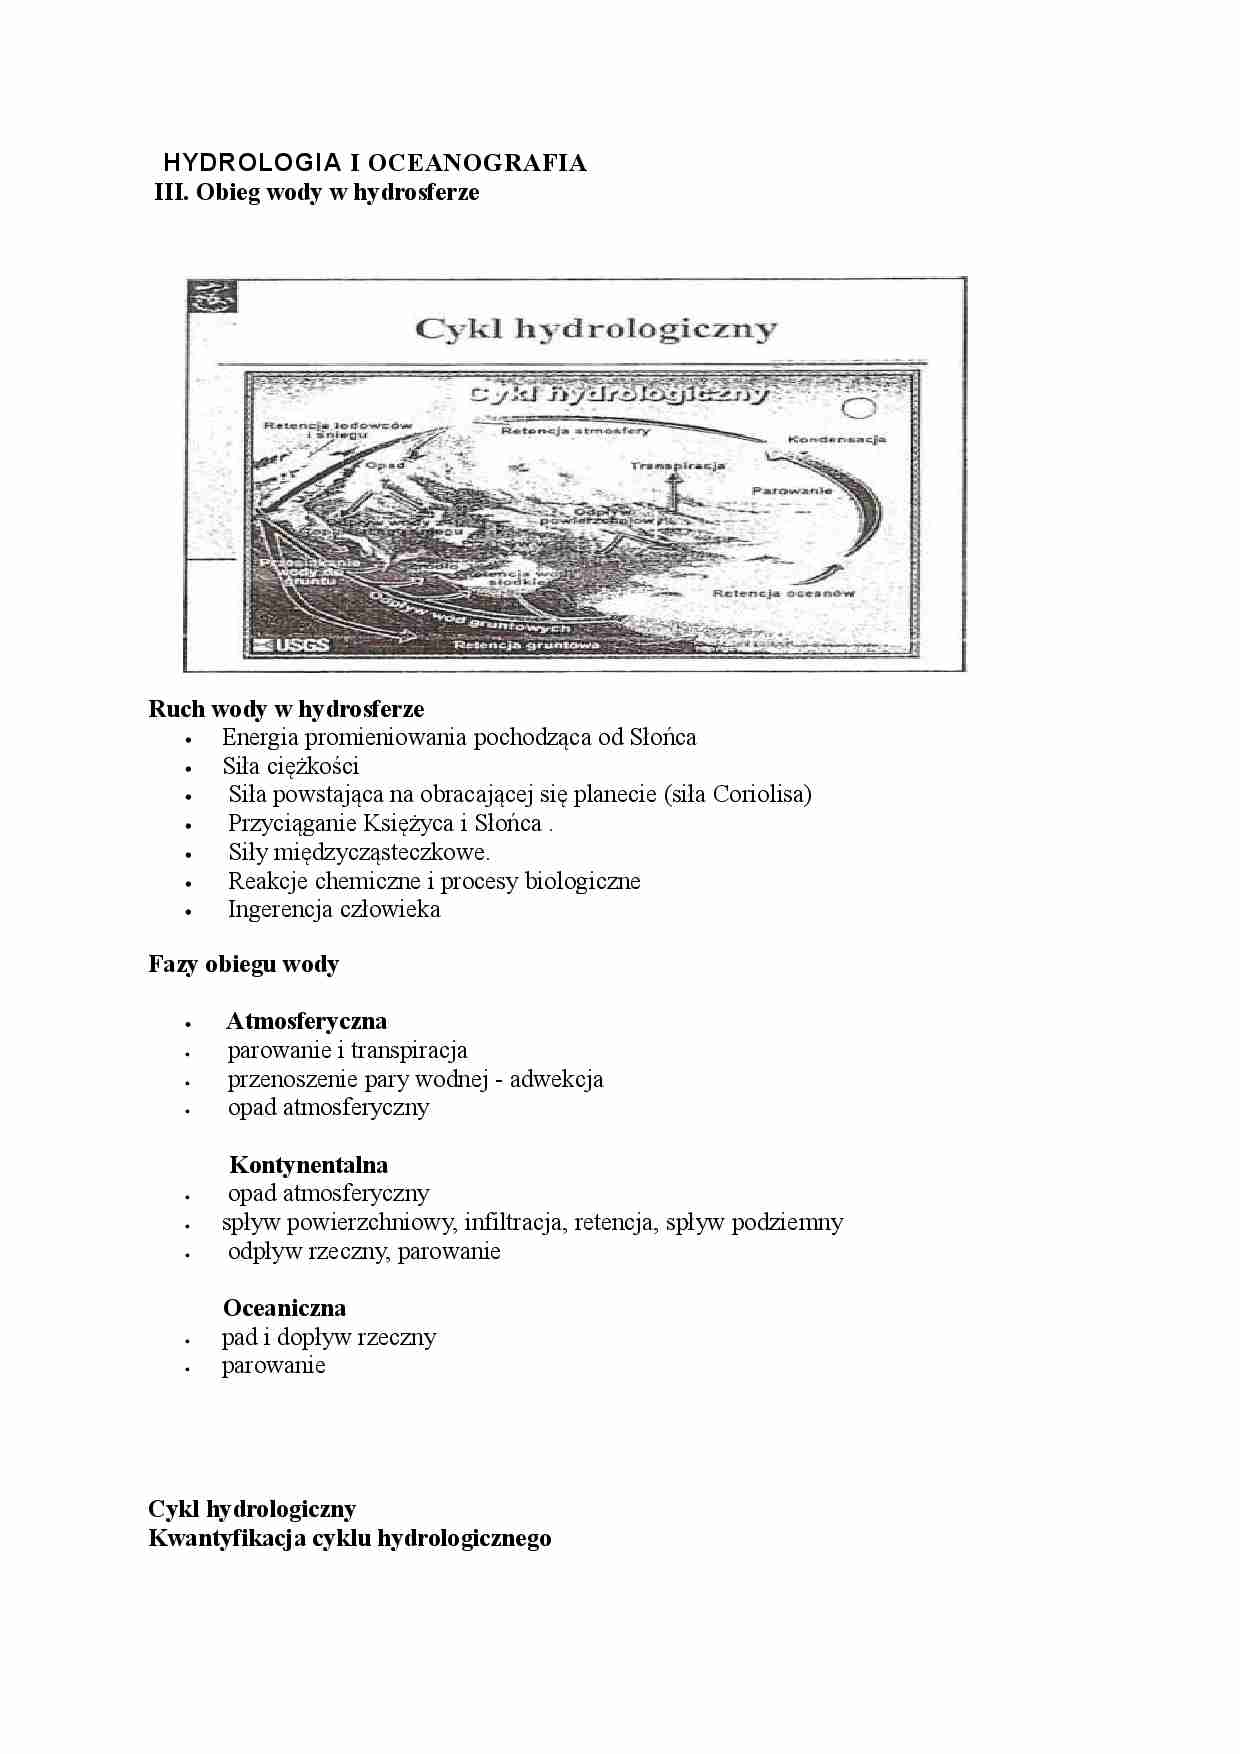 Hydrologia i oceanografia,Ruch wody w hydrosferze - strona 1